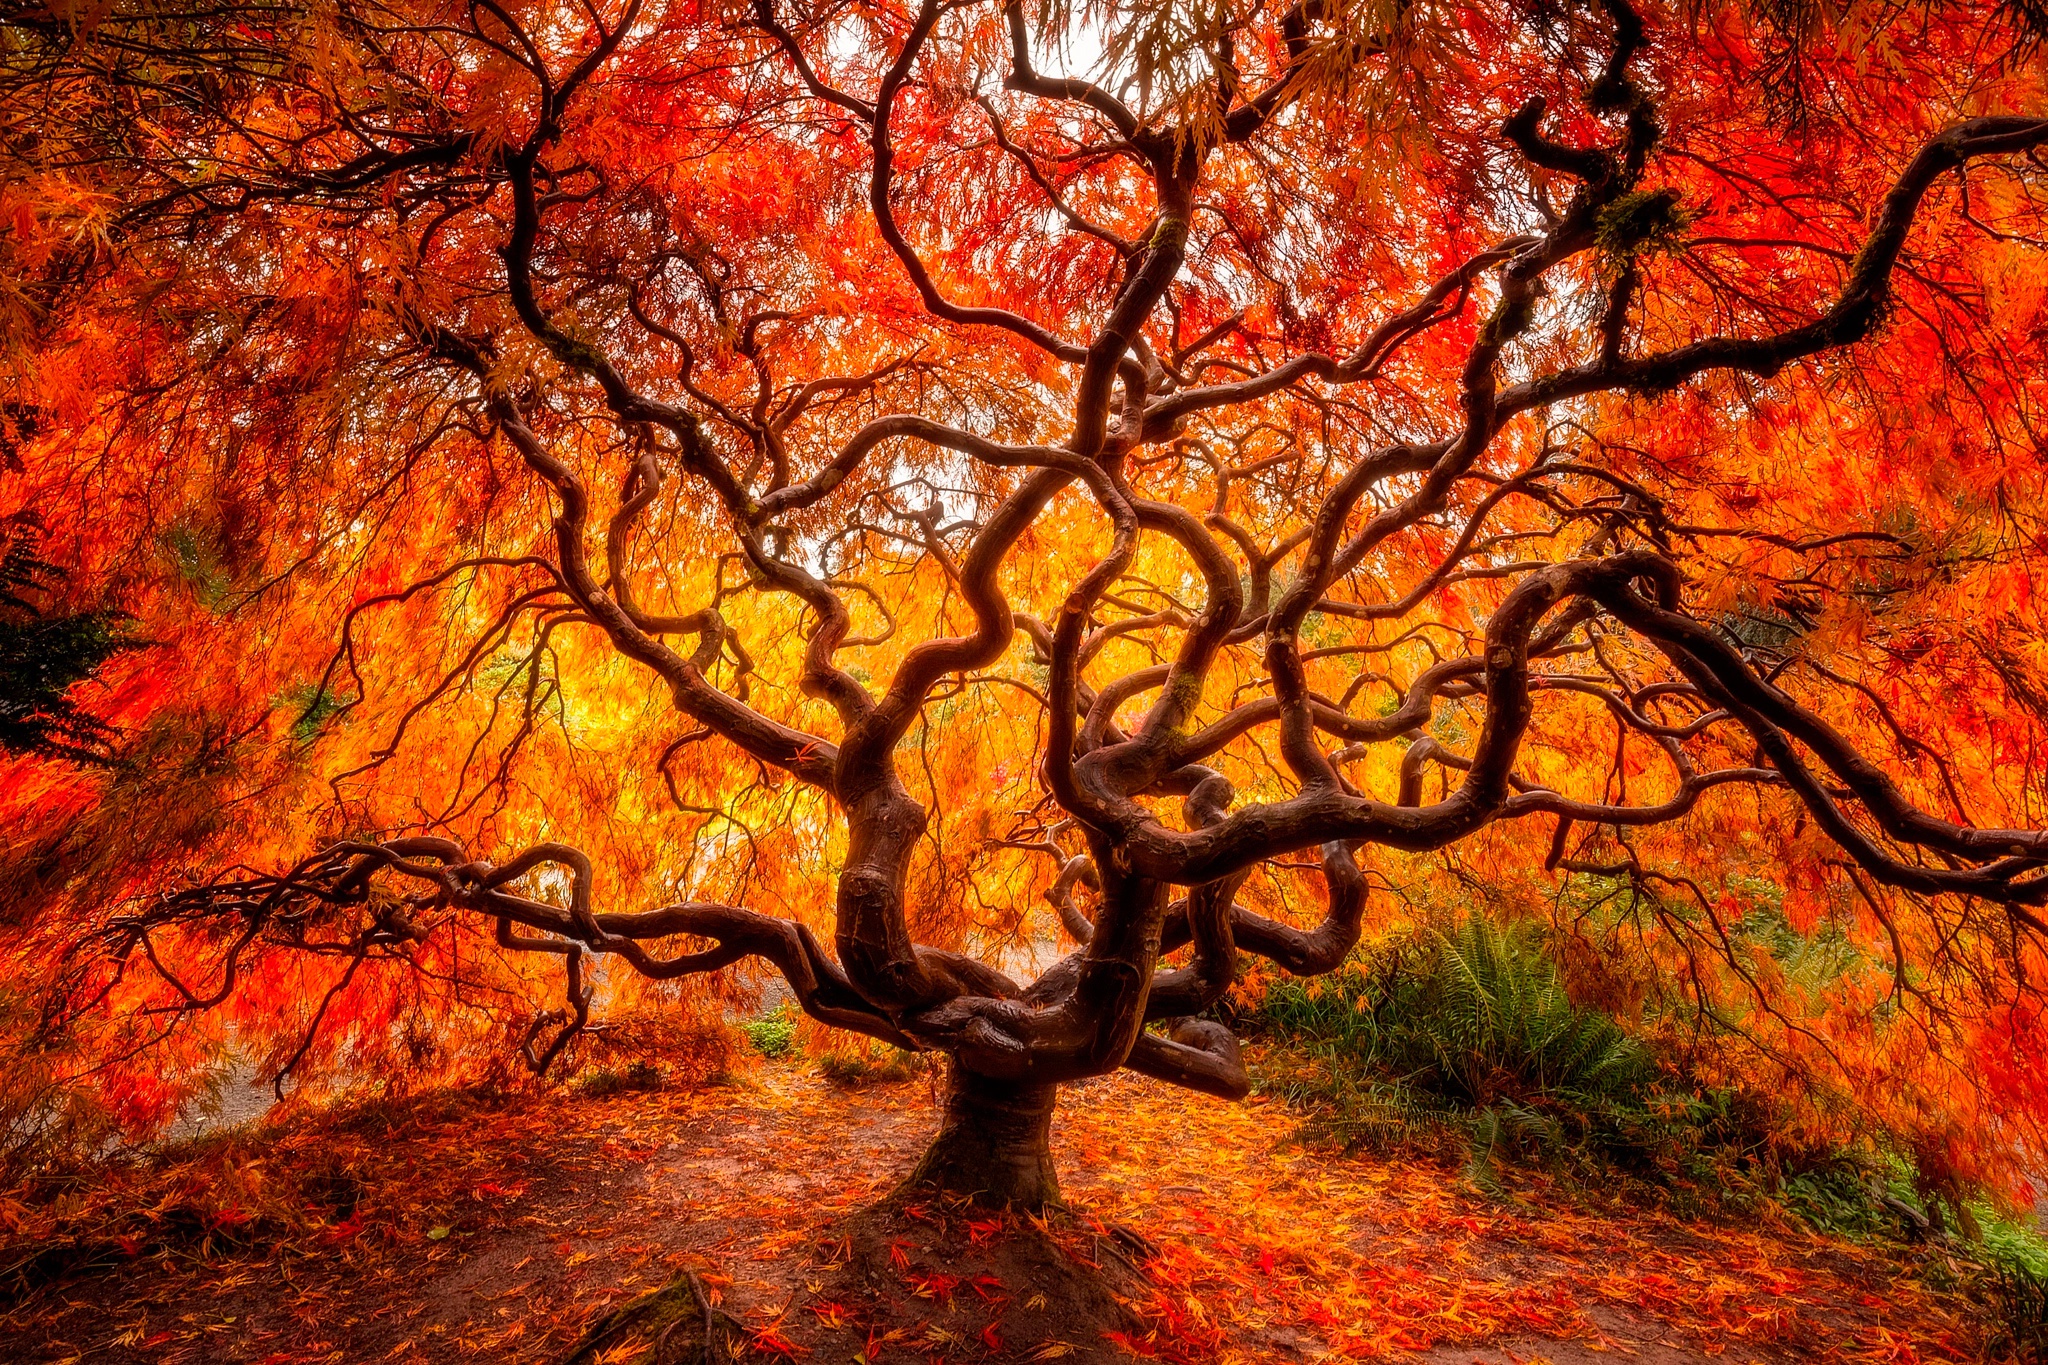 Скачать обои бесплатно Природа, Деревья, Осень, Дерево, Ветка, Земля/природа картинка на рабочий стол ПК